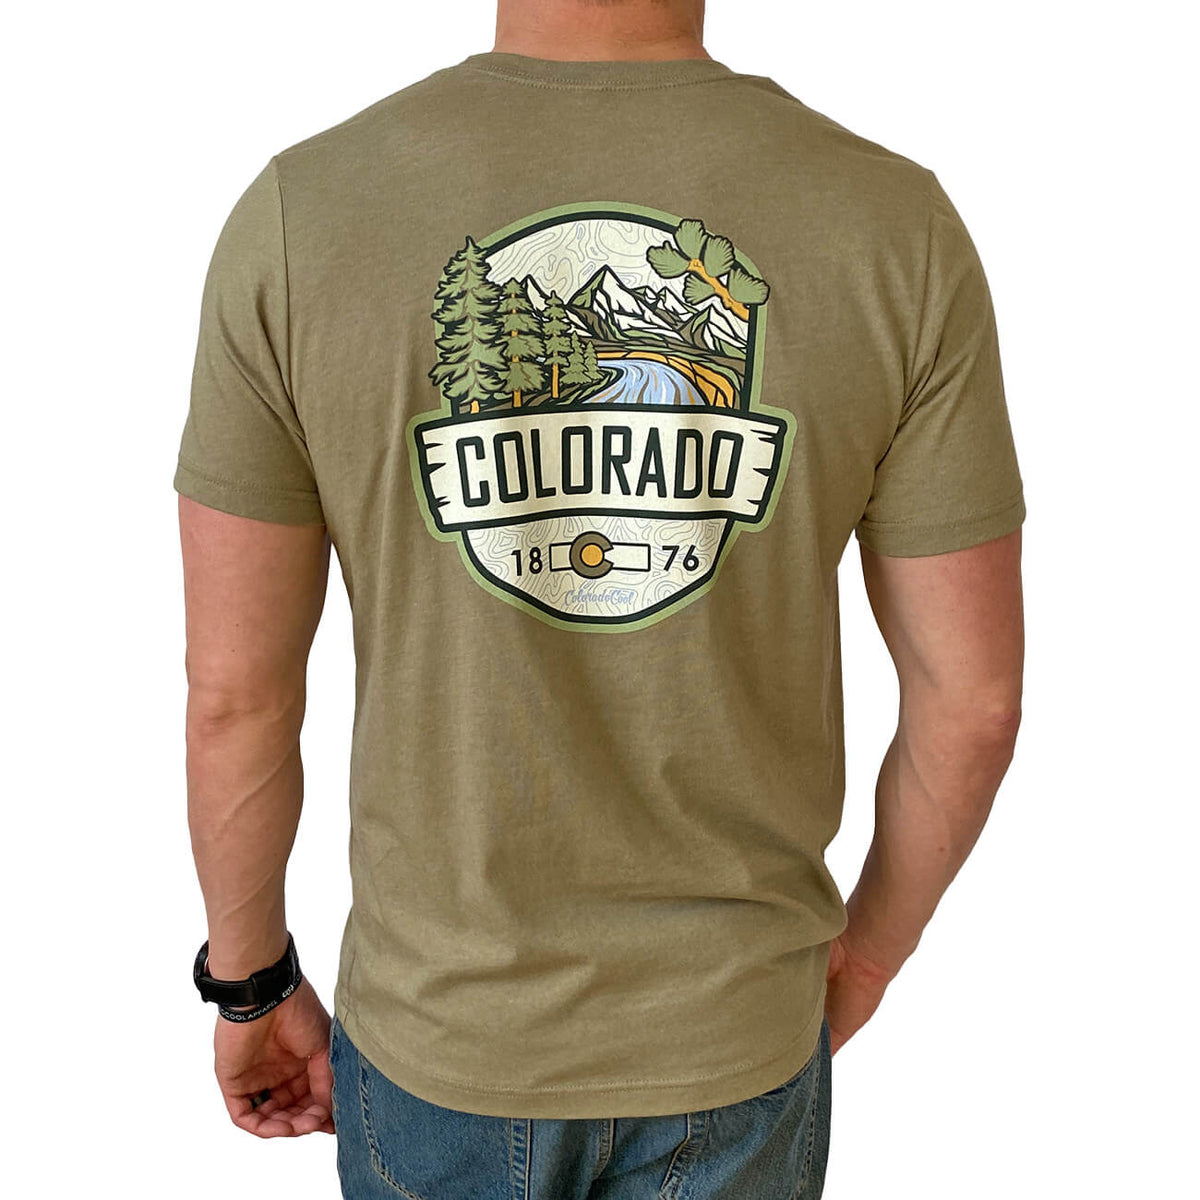 Colorado Shirt with Topo Map